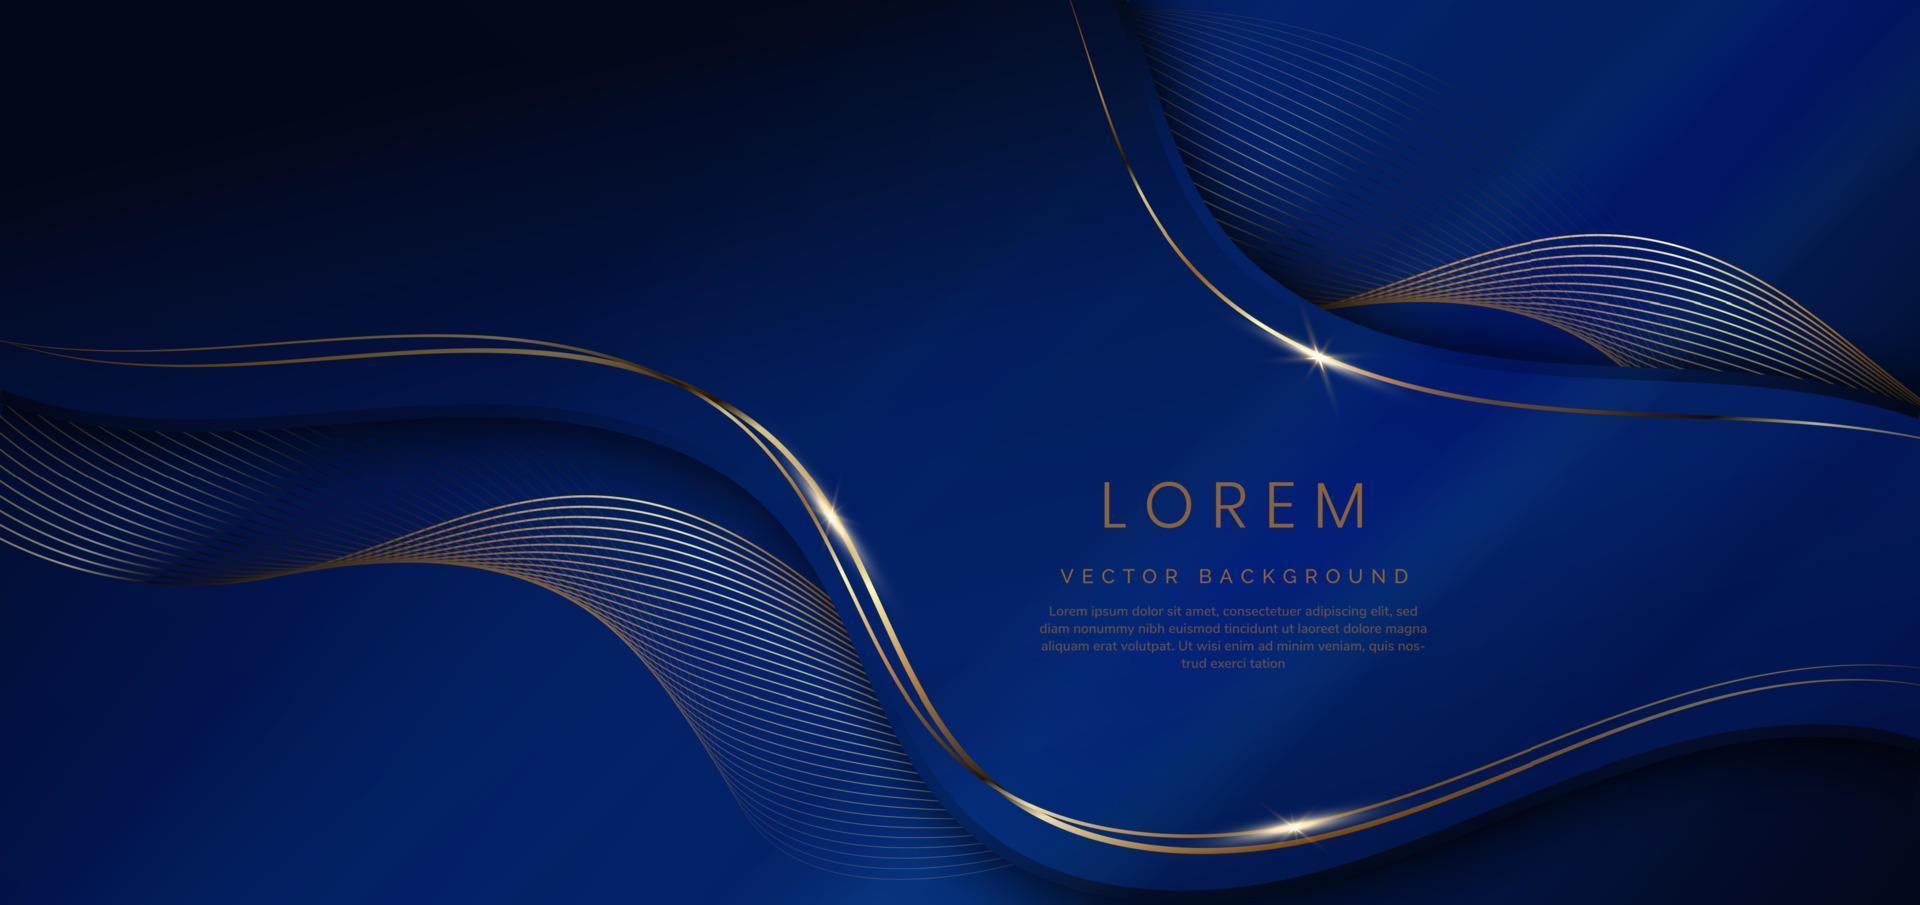 abstrakter dunkelblauer 3d-hintergrund mit goldenen linien, gebogen, wellig, funkeln mit kopienraum für text. Vorlagendesign im luxuriösen Stil. vektor